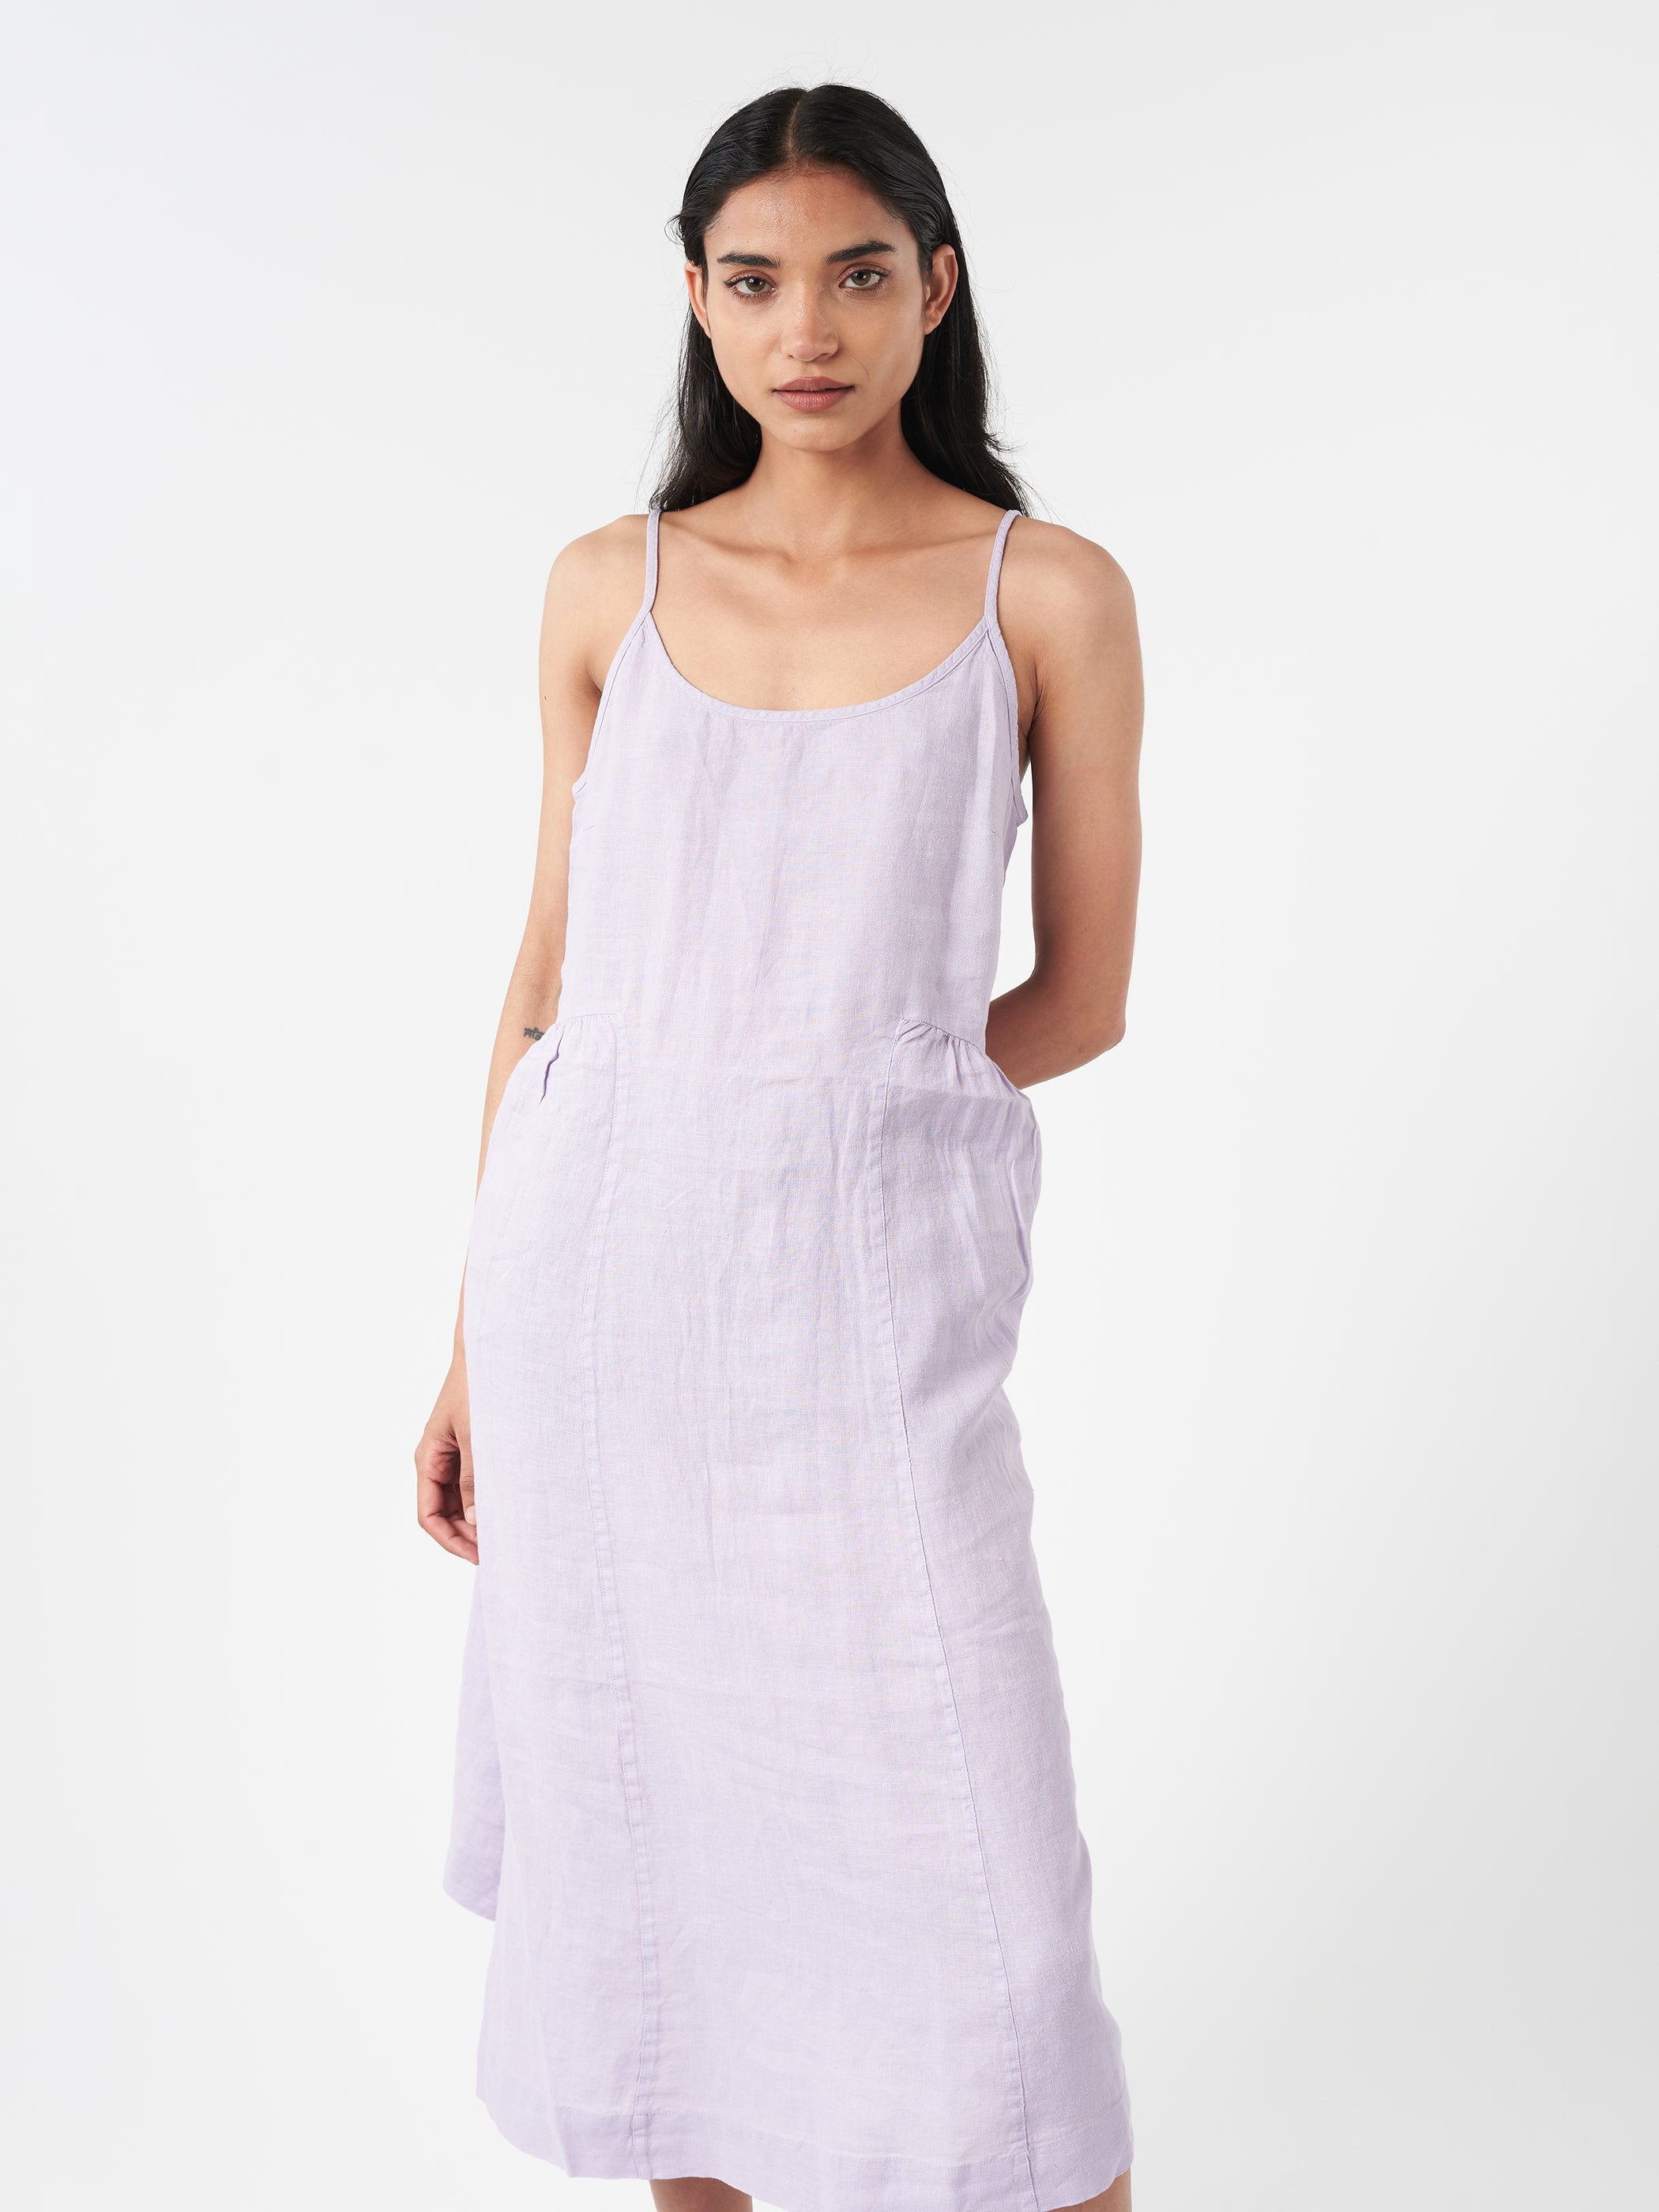 Garment Dyed Lightweight Linen Lounge Dress